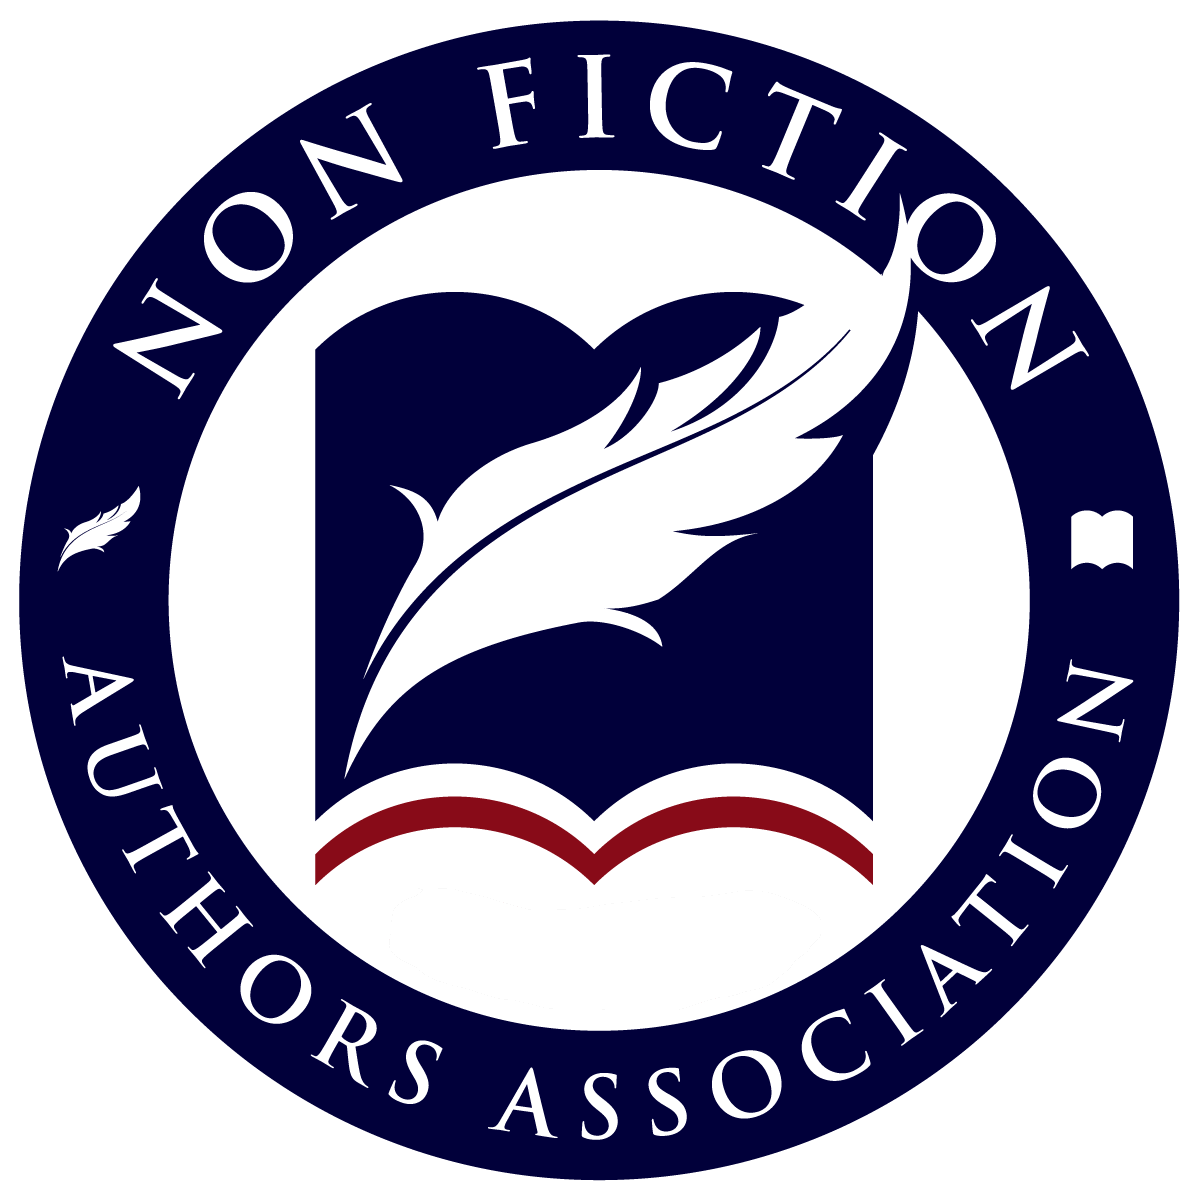 Nonfiction Authors Association